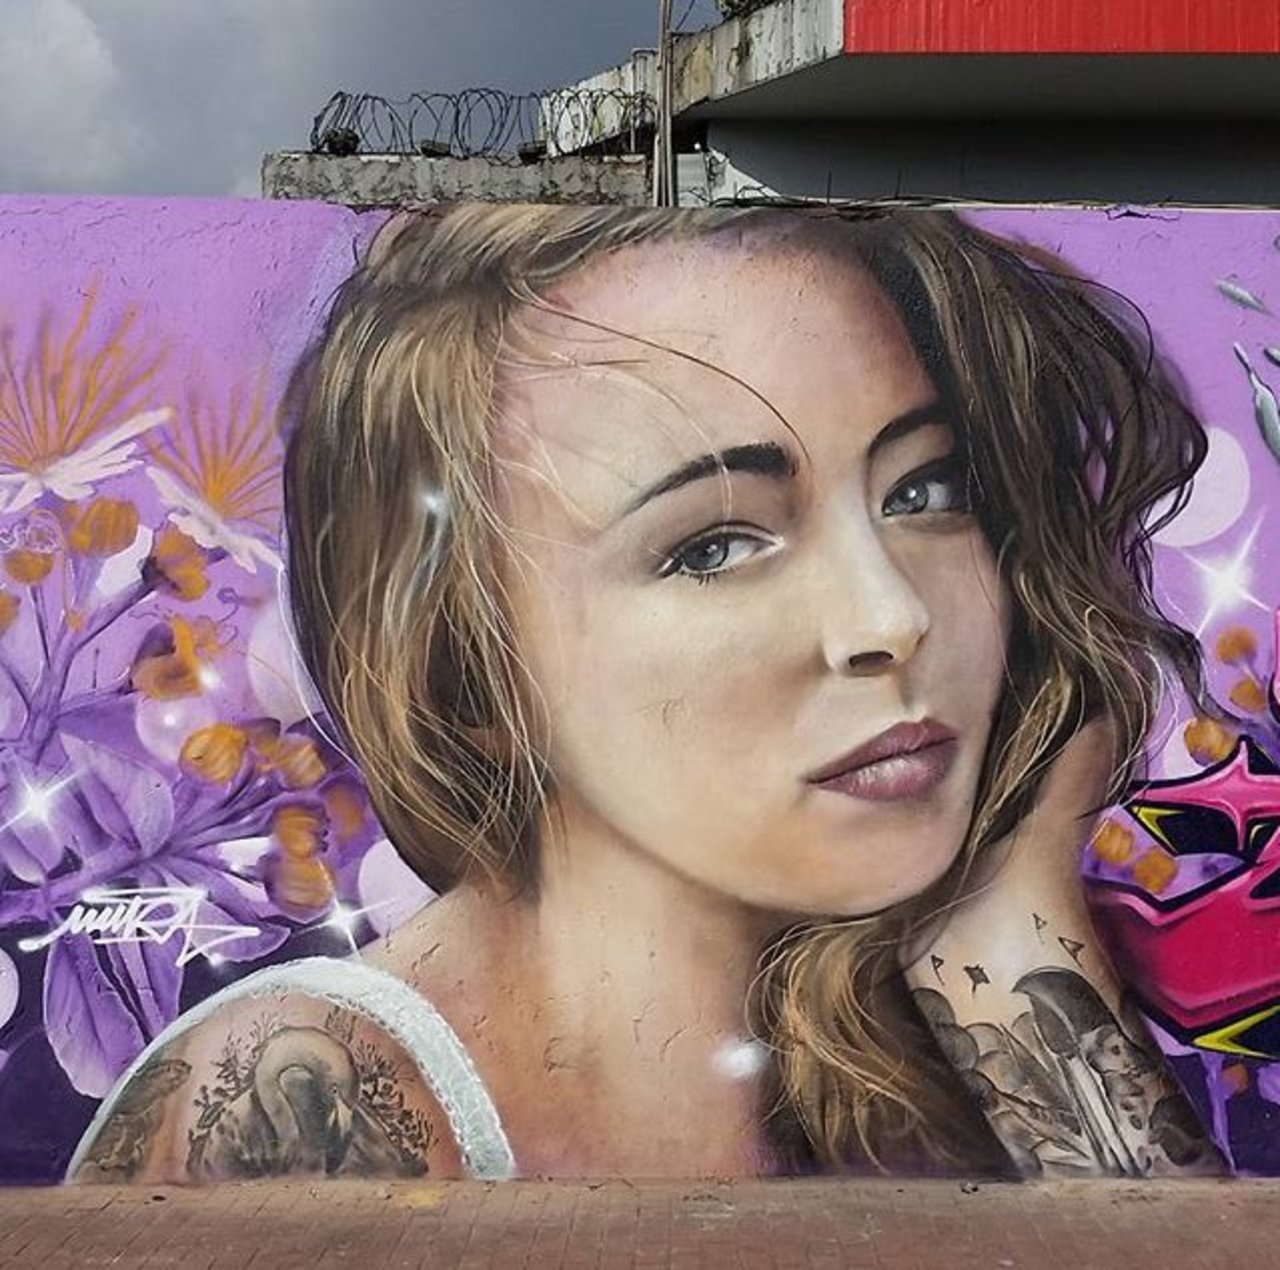 RT belilac "RT belilac "New Street Art by Mantarea 

#art #graffiti #mural #streetart https://t.co/U038PzVuGN""